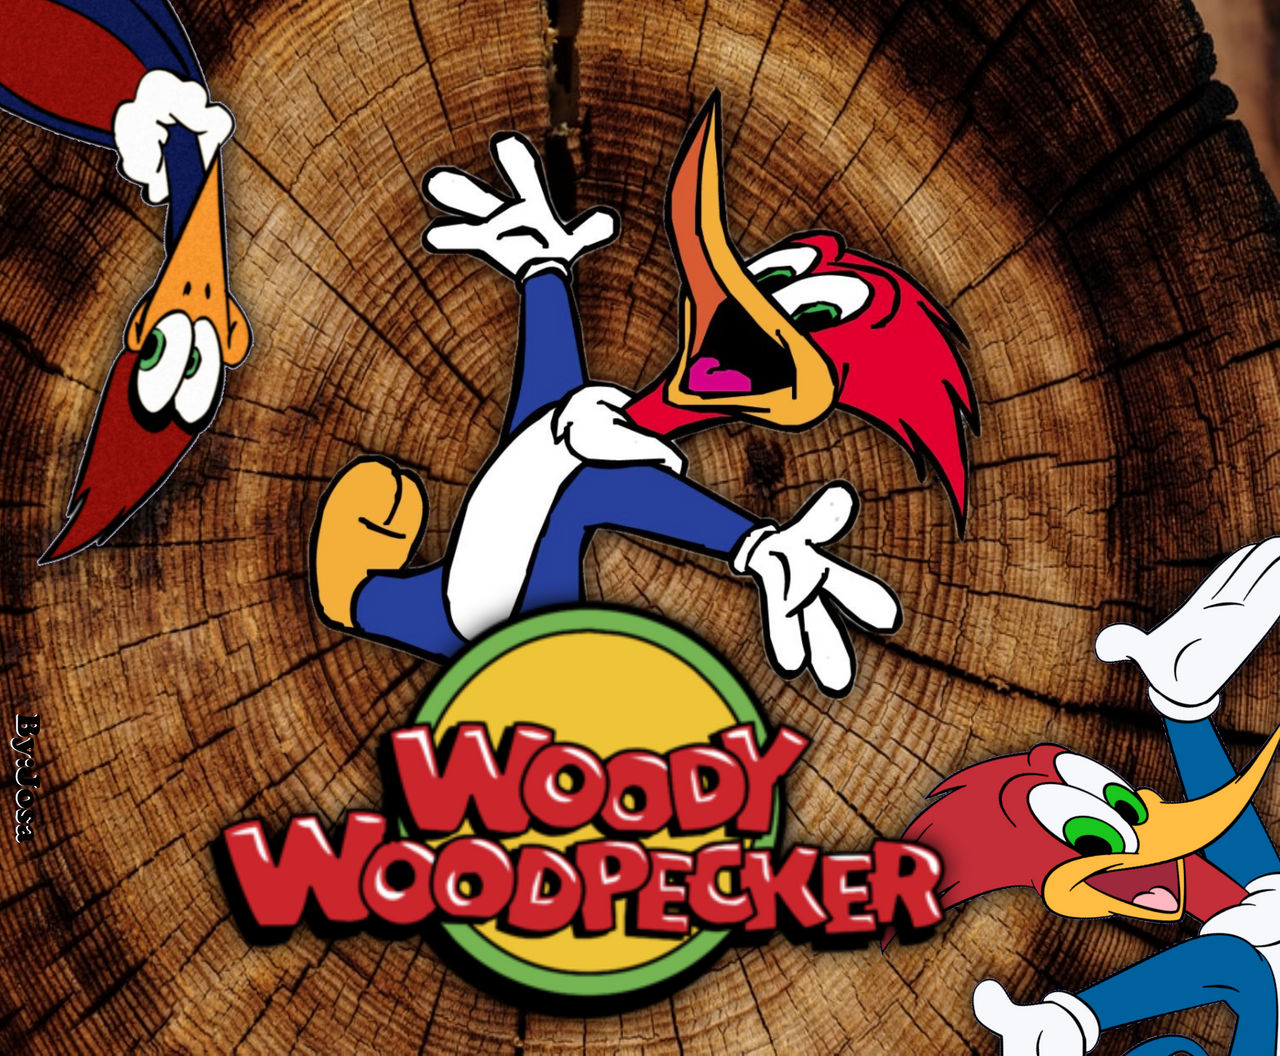 Woodpecker Wallpapers